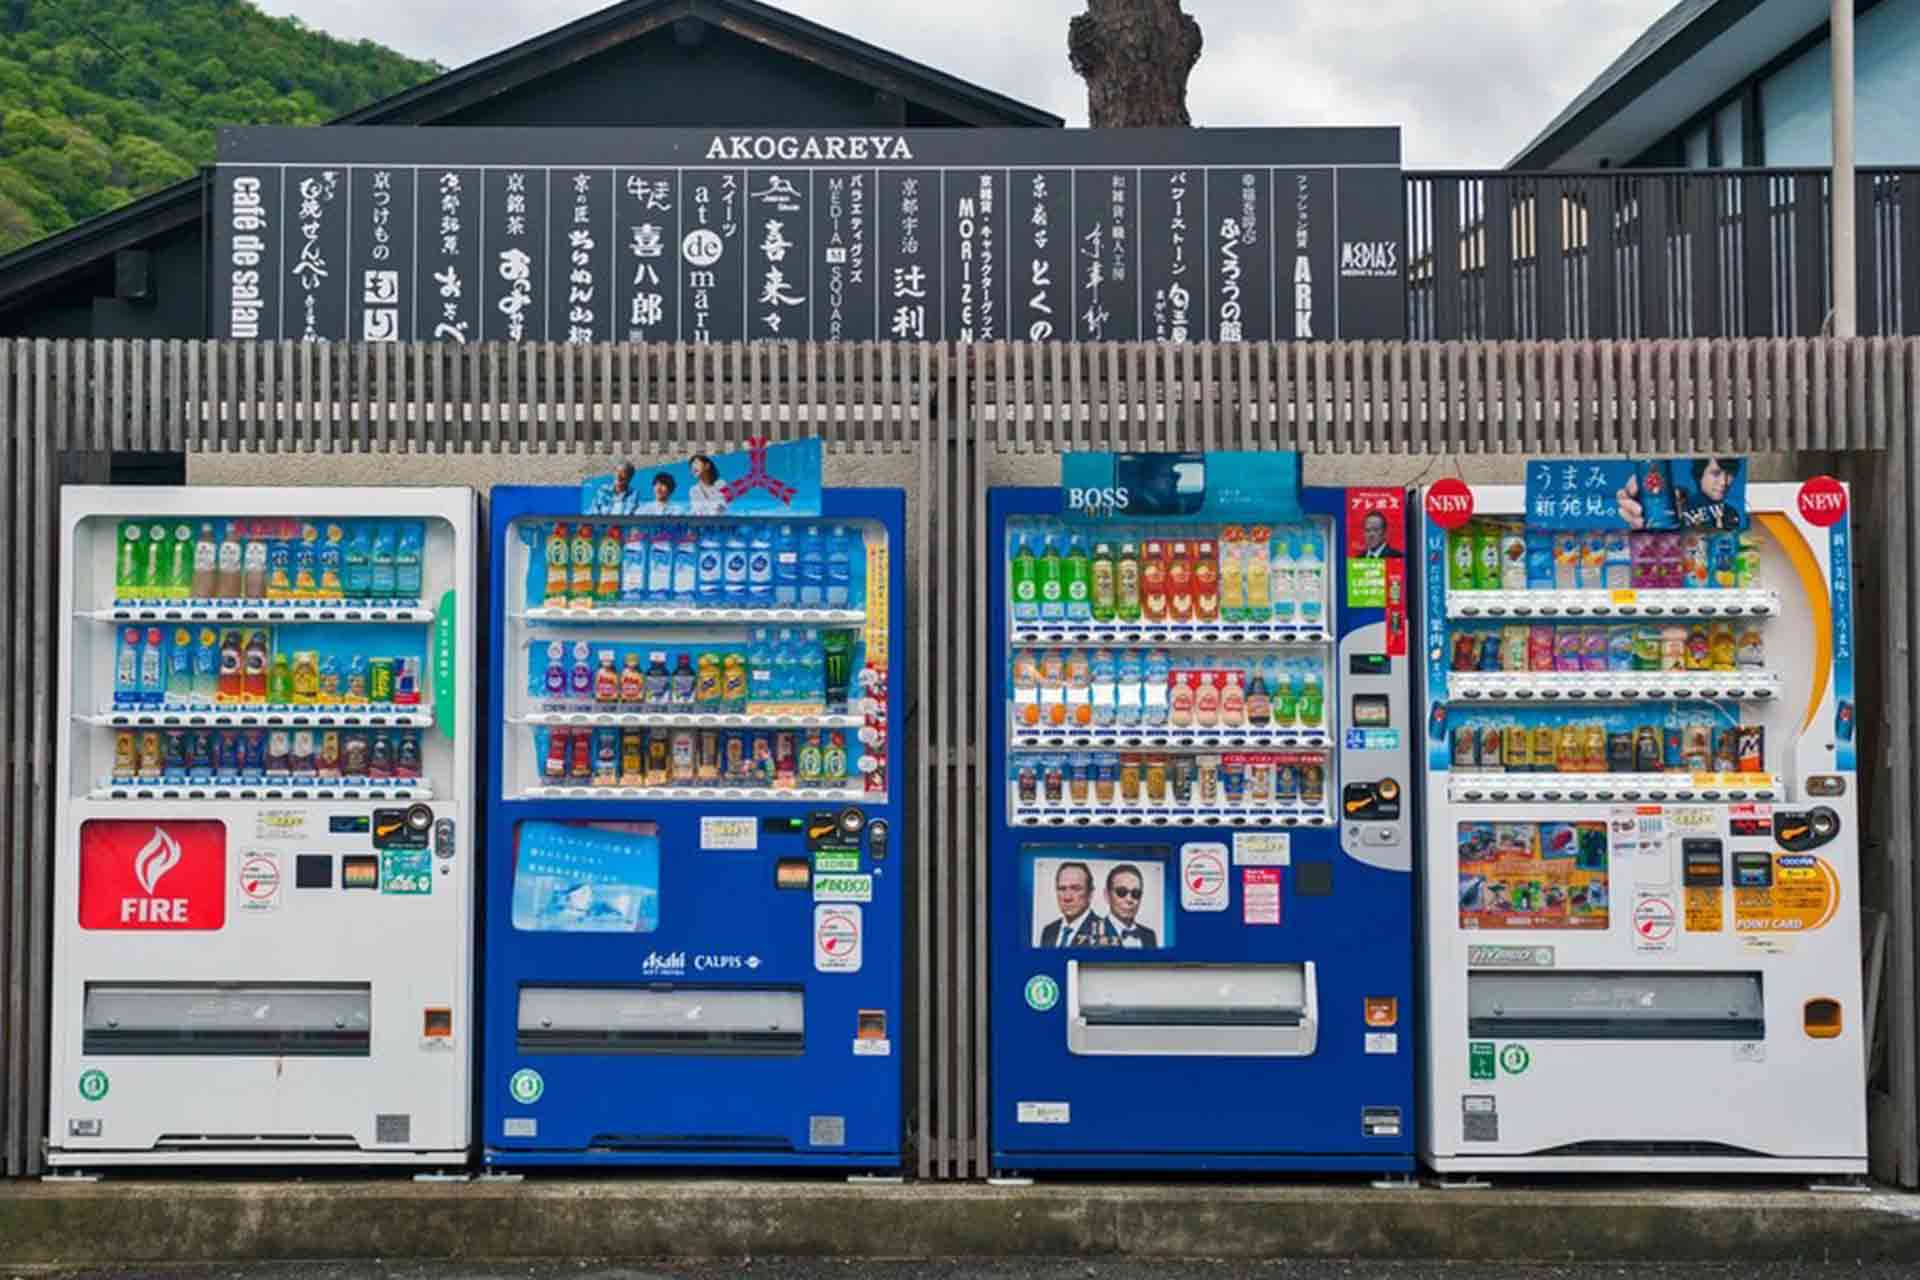 自動販賣機天堂 日本 十四山村日本語塾天母學日語